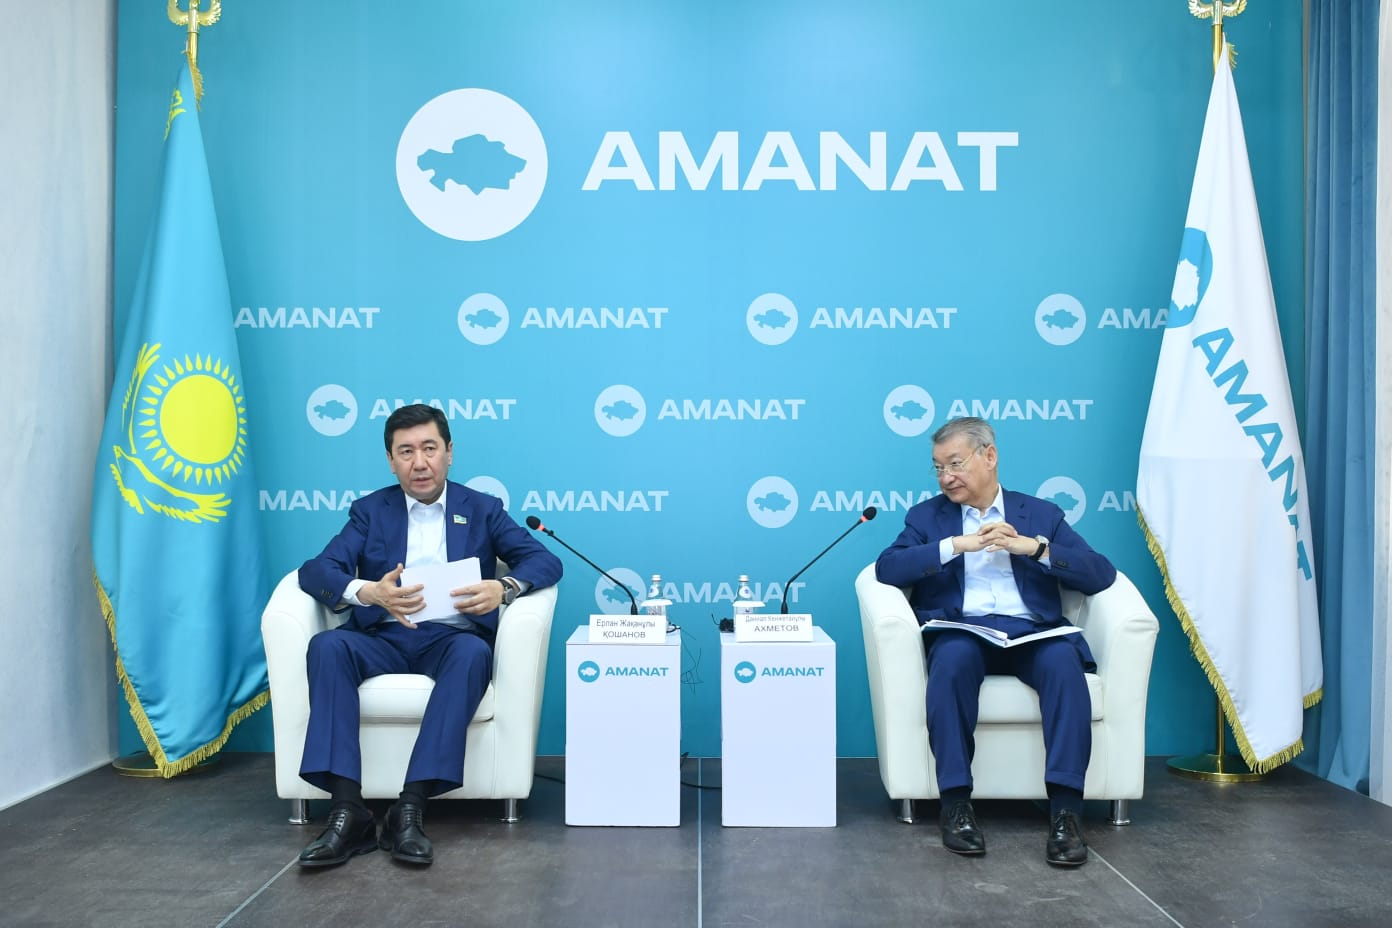 Е. Қошанов: «AMANAT» партиясы реформаларды халыққа түсіндірудің алдыңғы шебінде жүруге тиіс